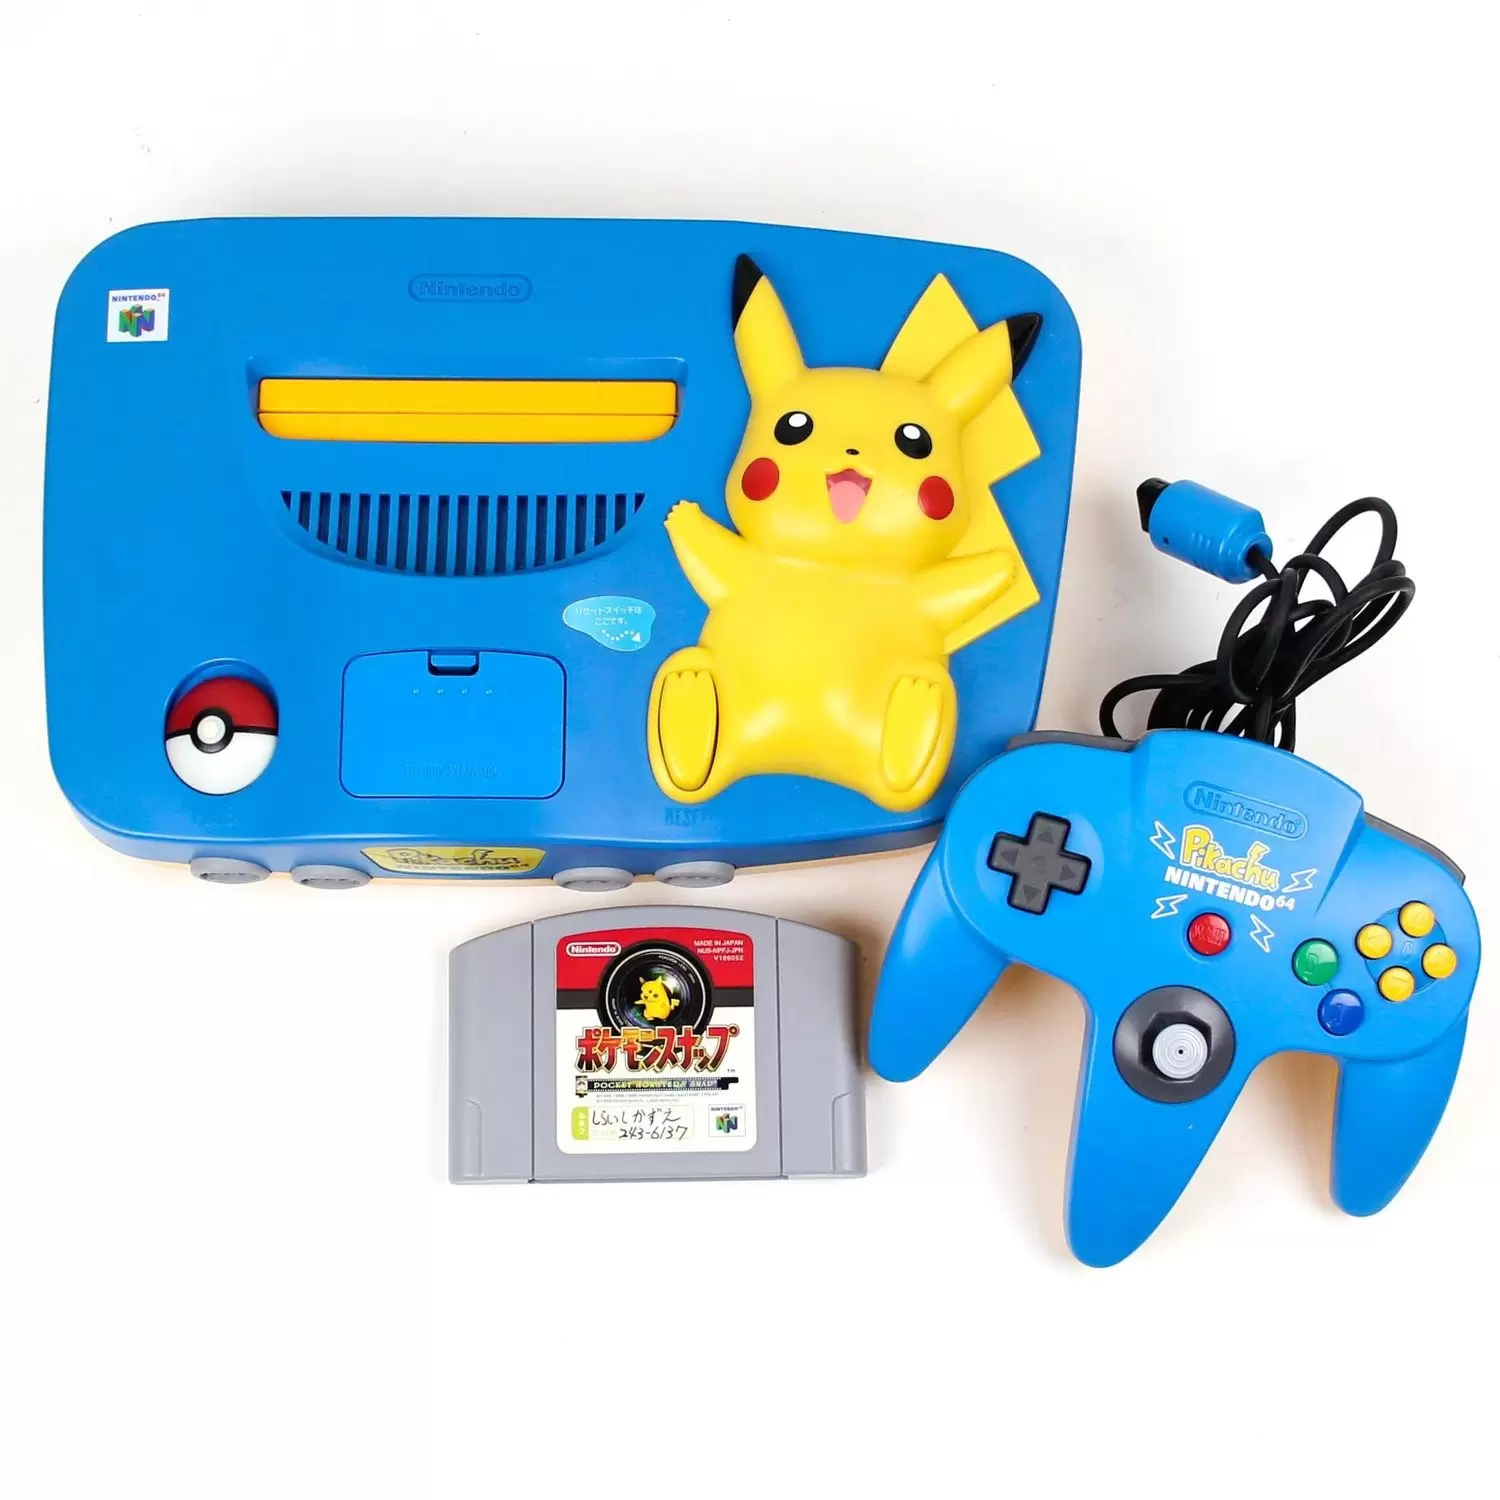 Matériel Nintendo 64 - Nintendo 64 Pikachu Bleu Clair /Jaune